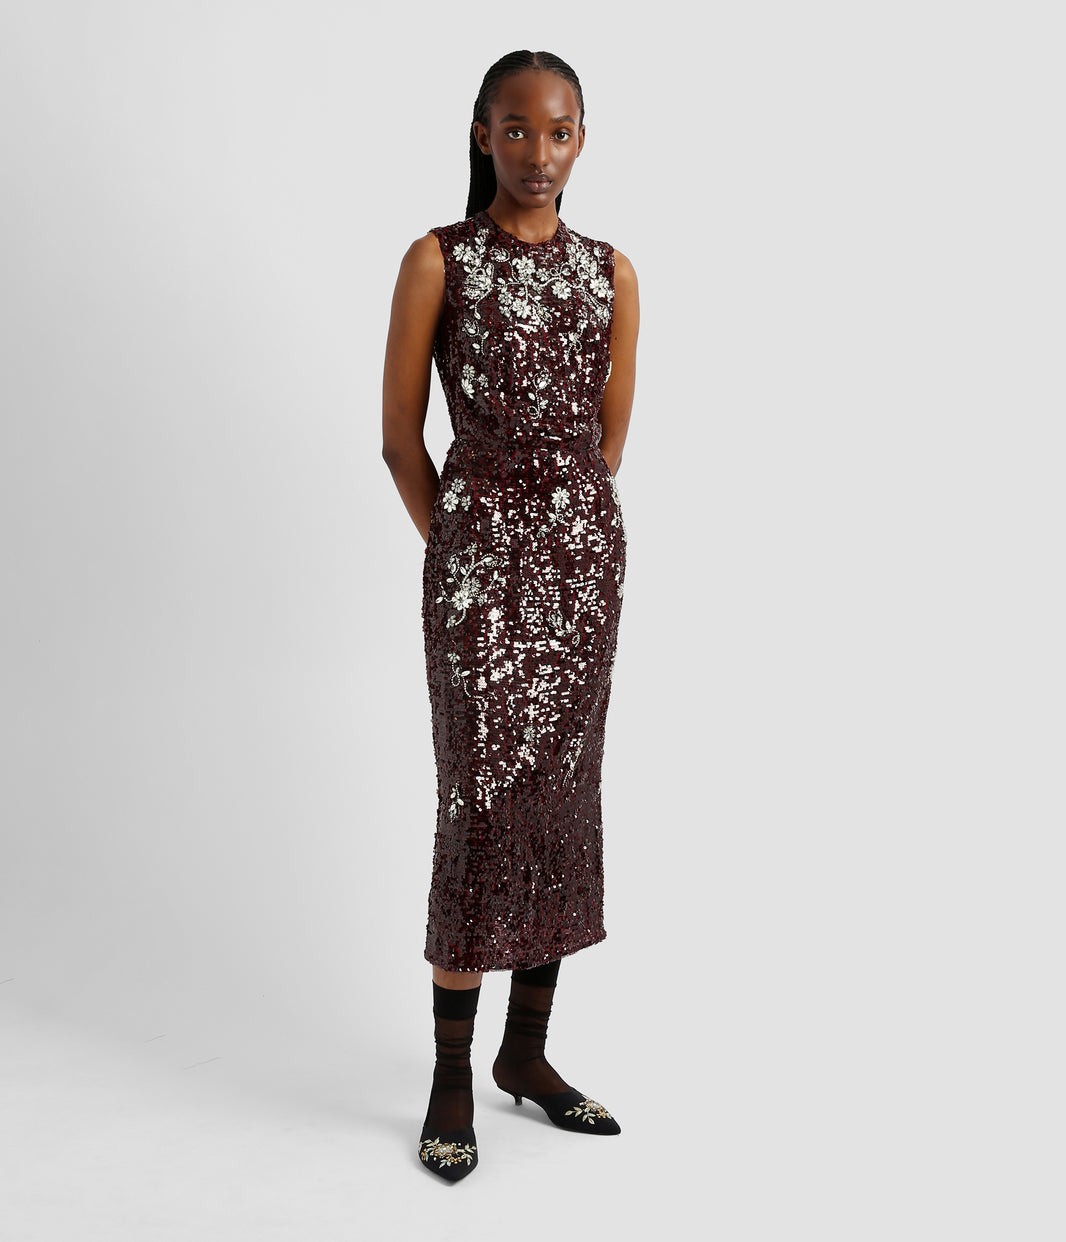 Women's Designer Dresses | ERDEM® Official Luxury Dresses